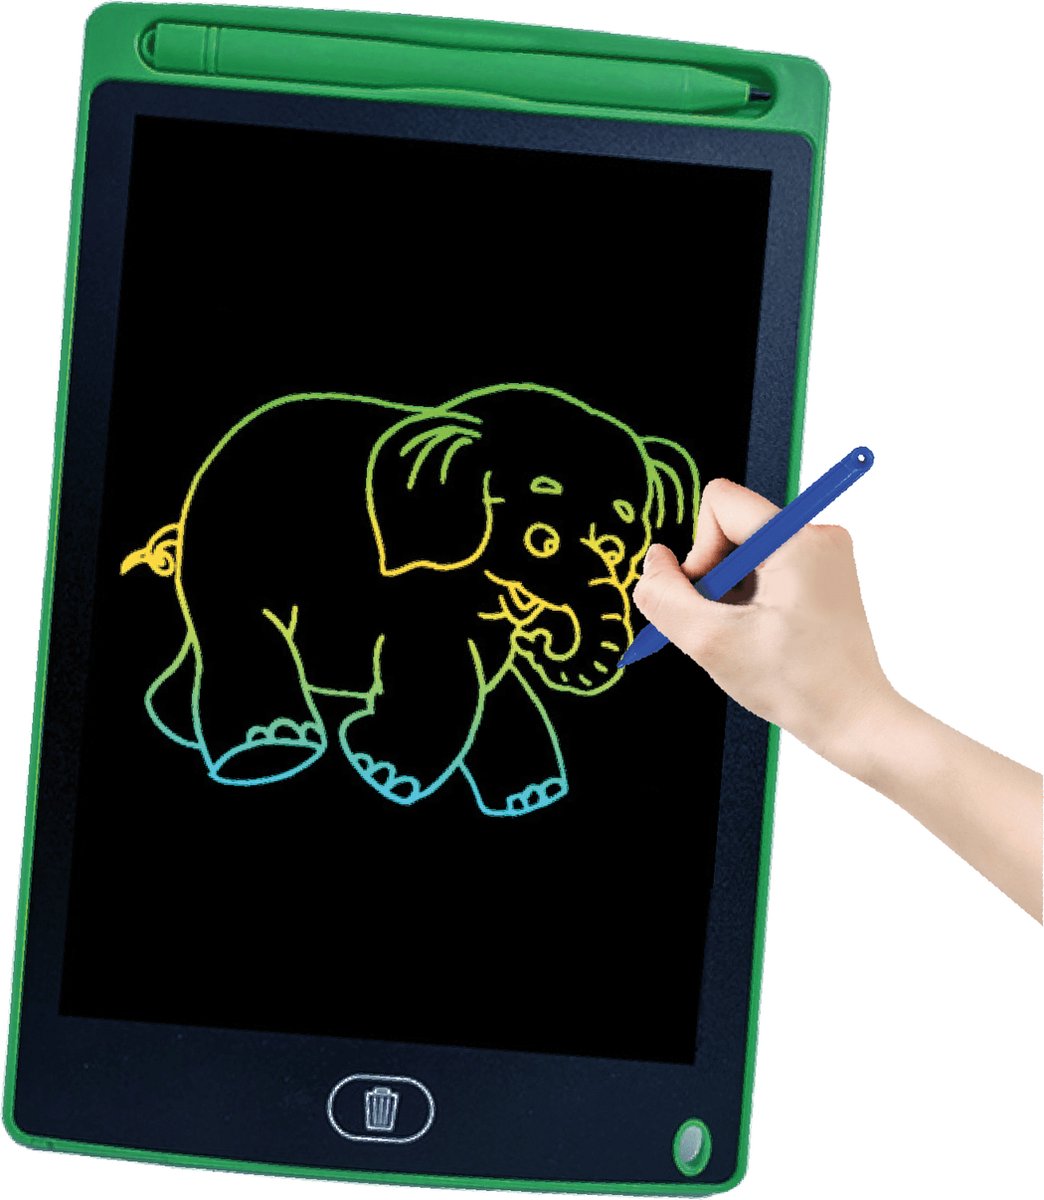 DotasToys Tekentablet - LCD Tablet - Kindertablet - Tekenbord & Schrijfbord met Scherm - Keer op keer Tekenen